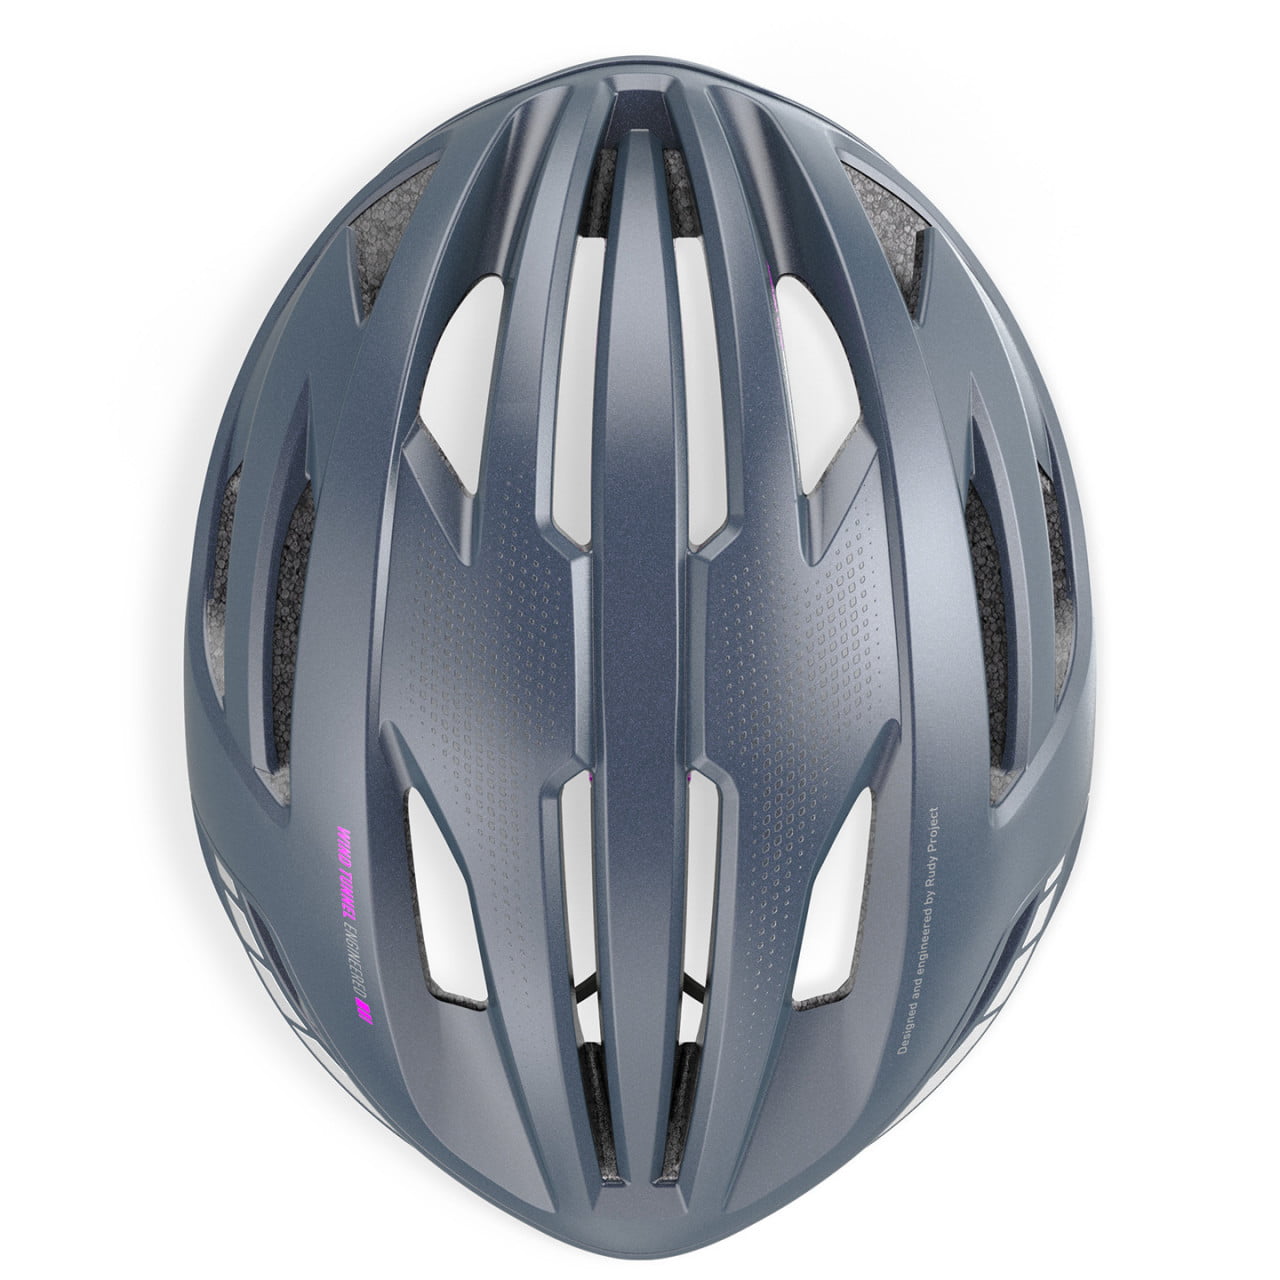 Egos Road Bike Helmet 2024